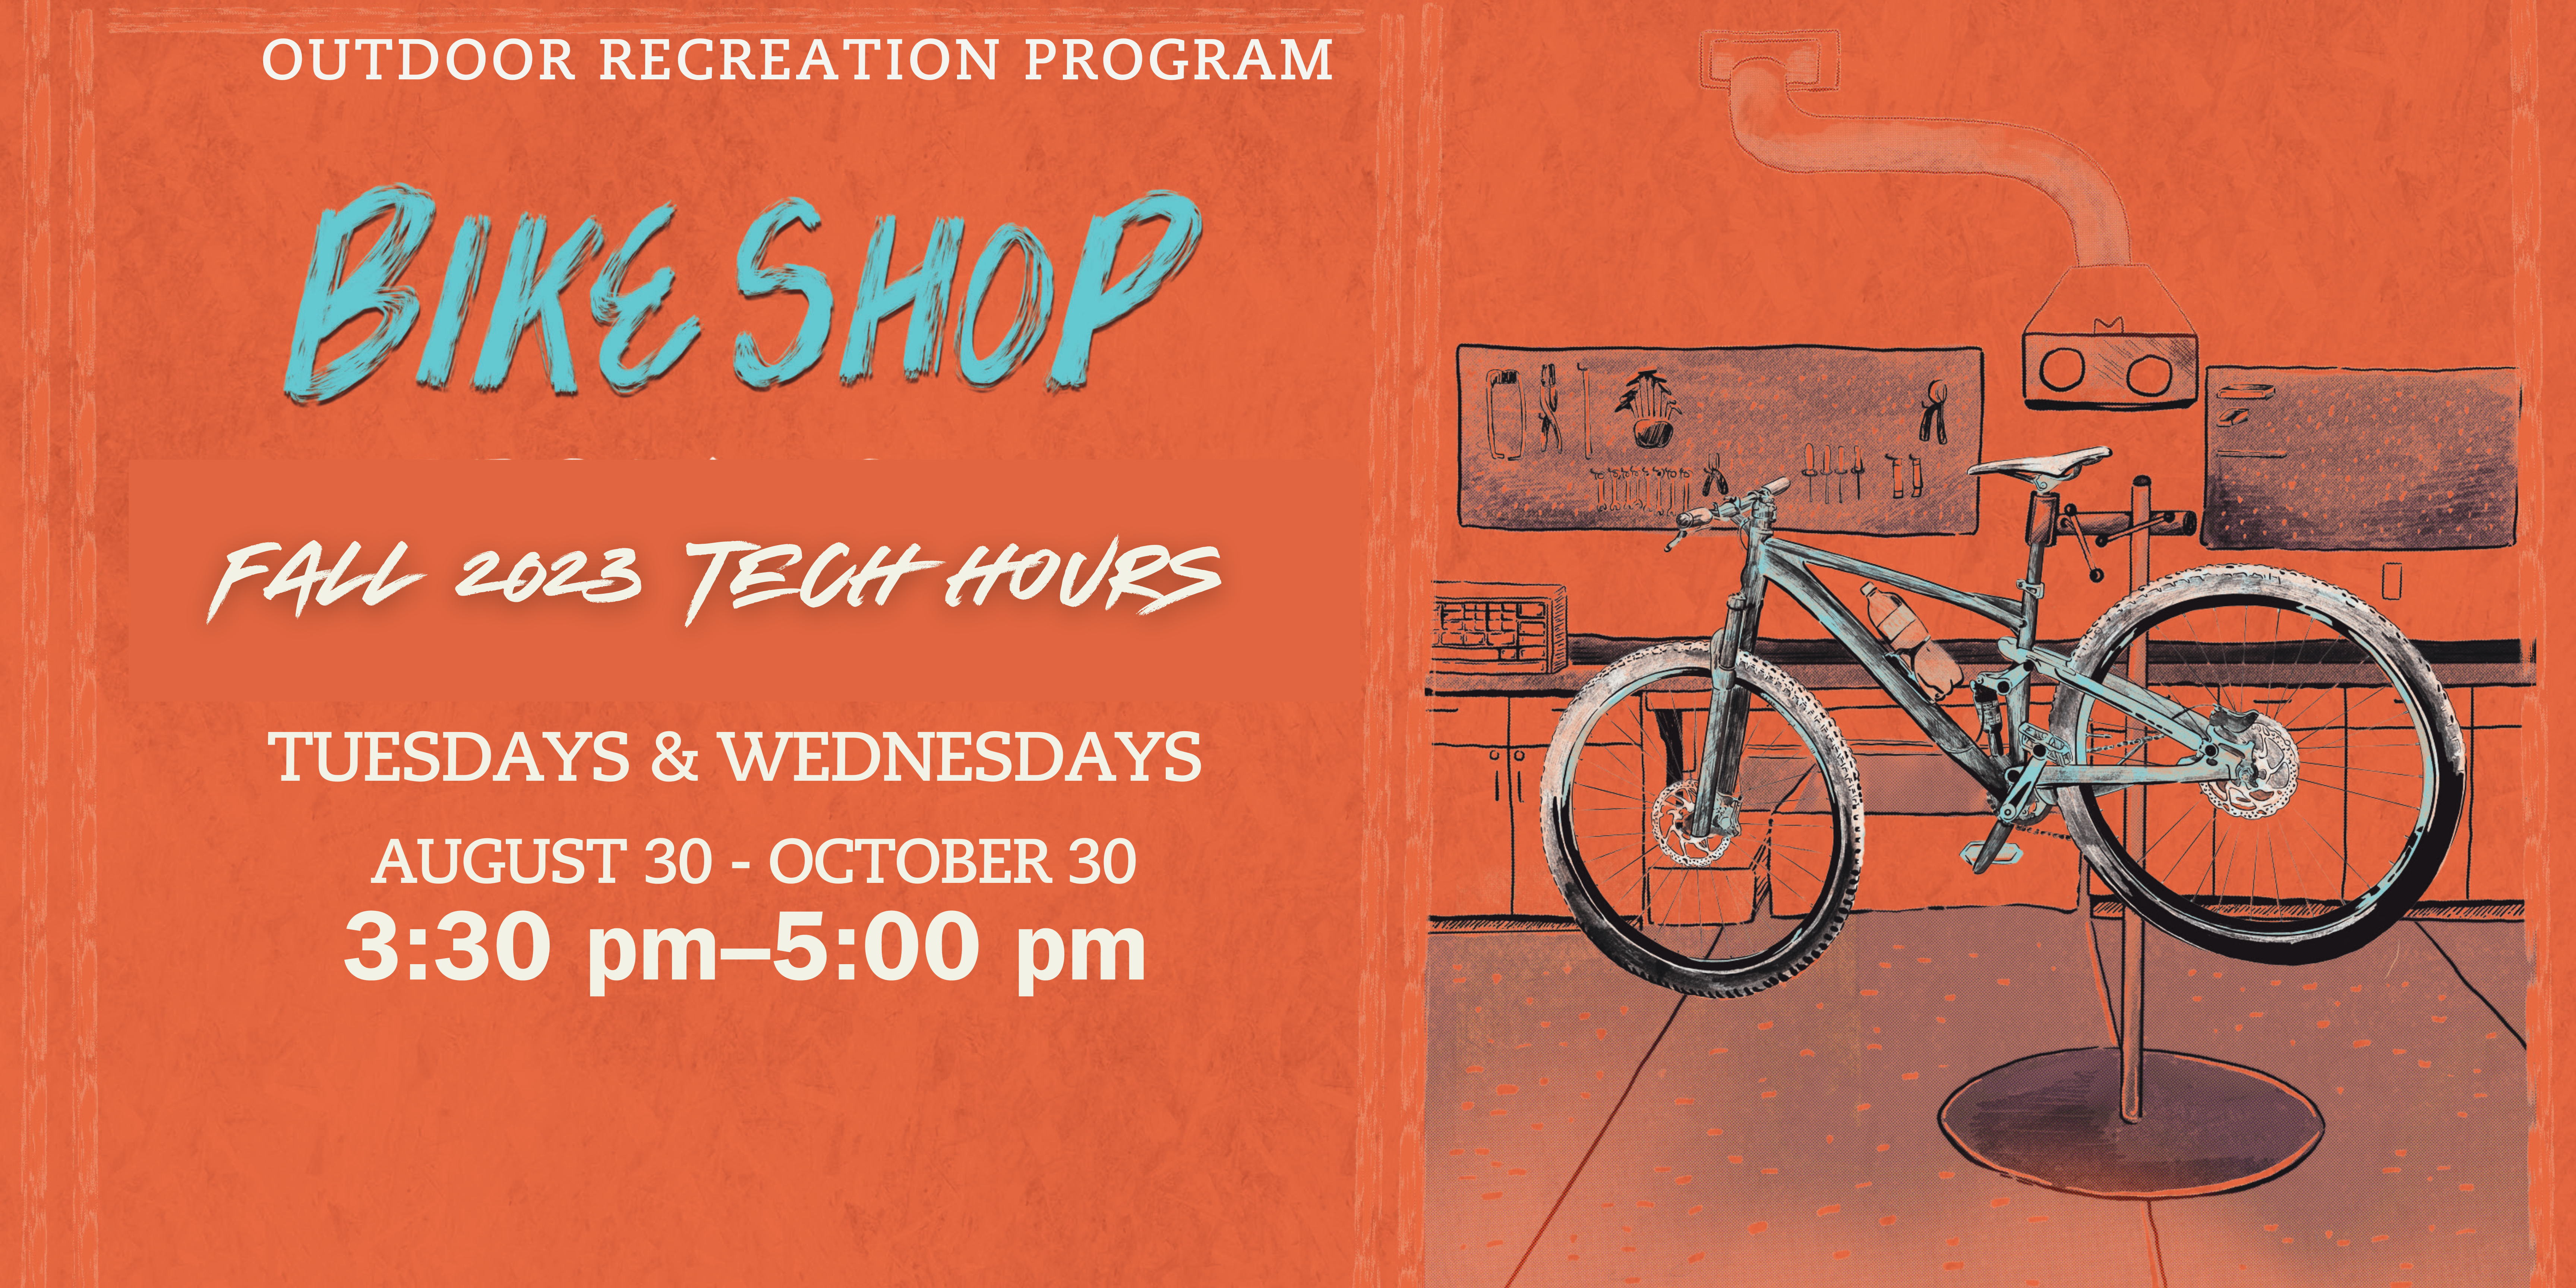 Bike Shop Tech Hours